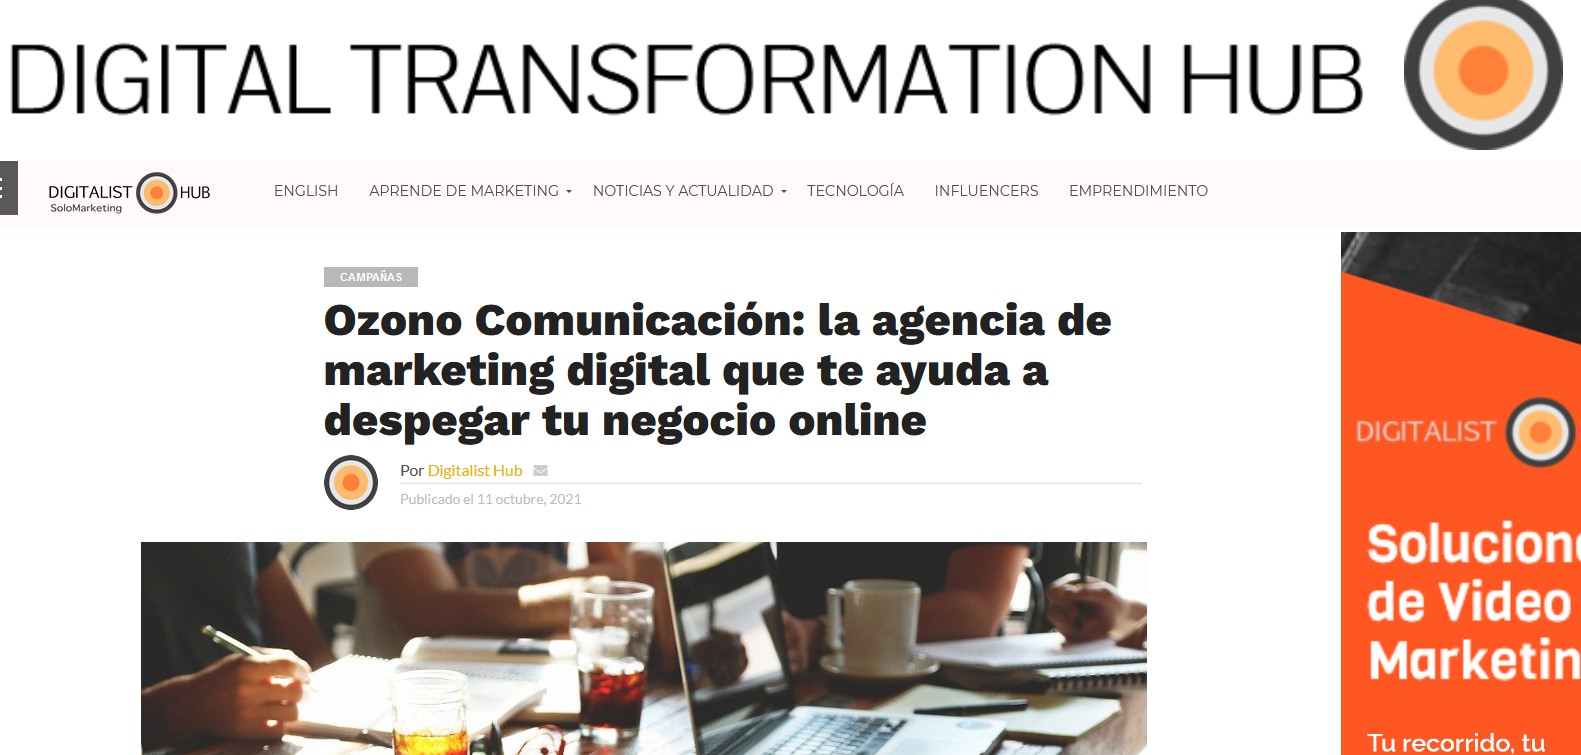 Ozono Comunicación: la agencia de marketing digital que te ayuda a despegar tu negocio online